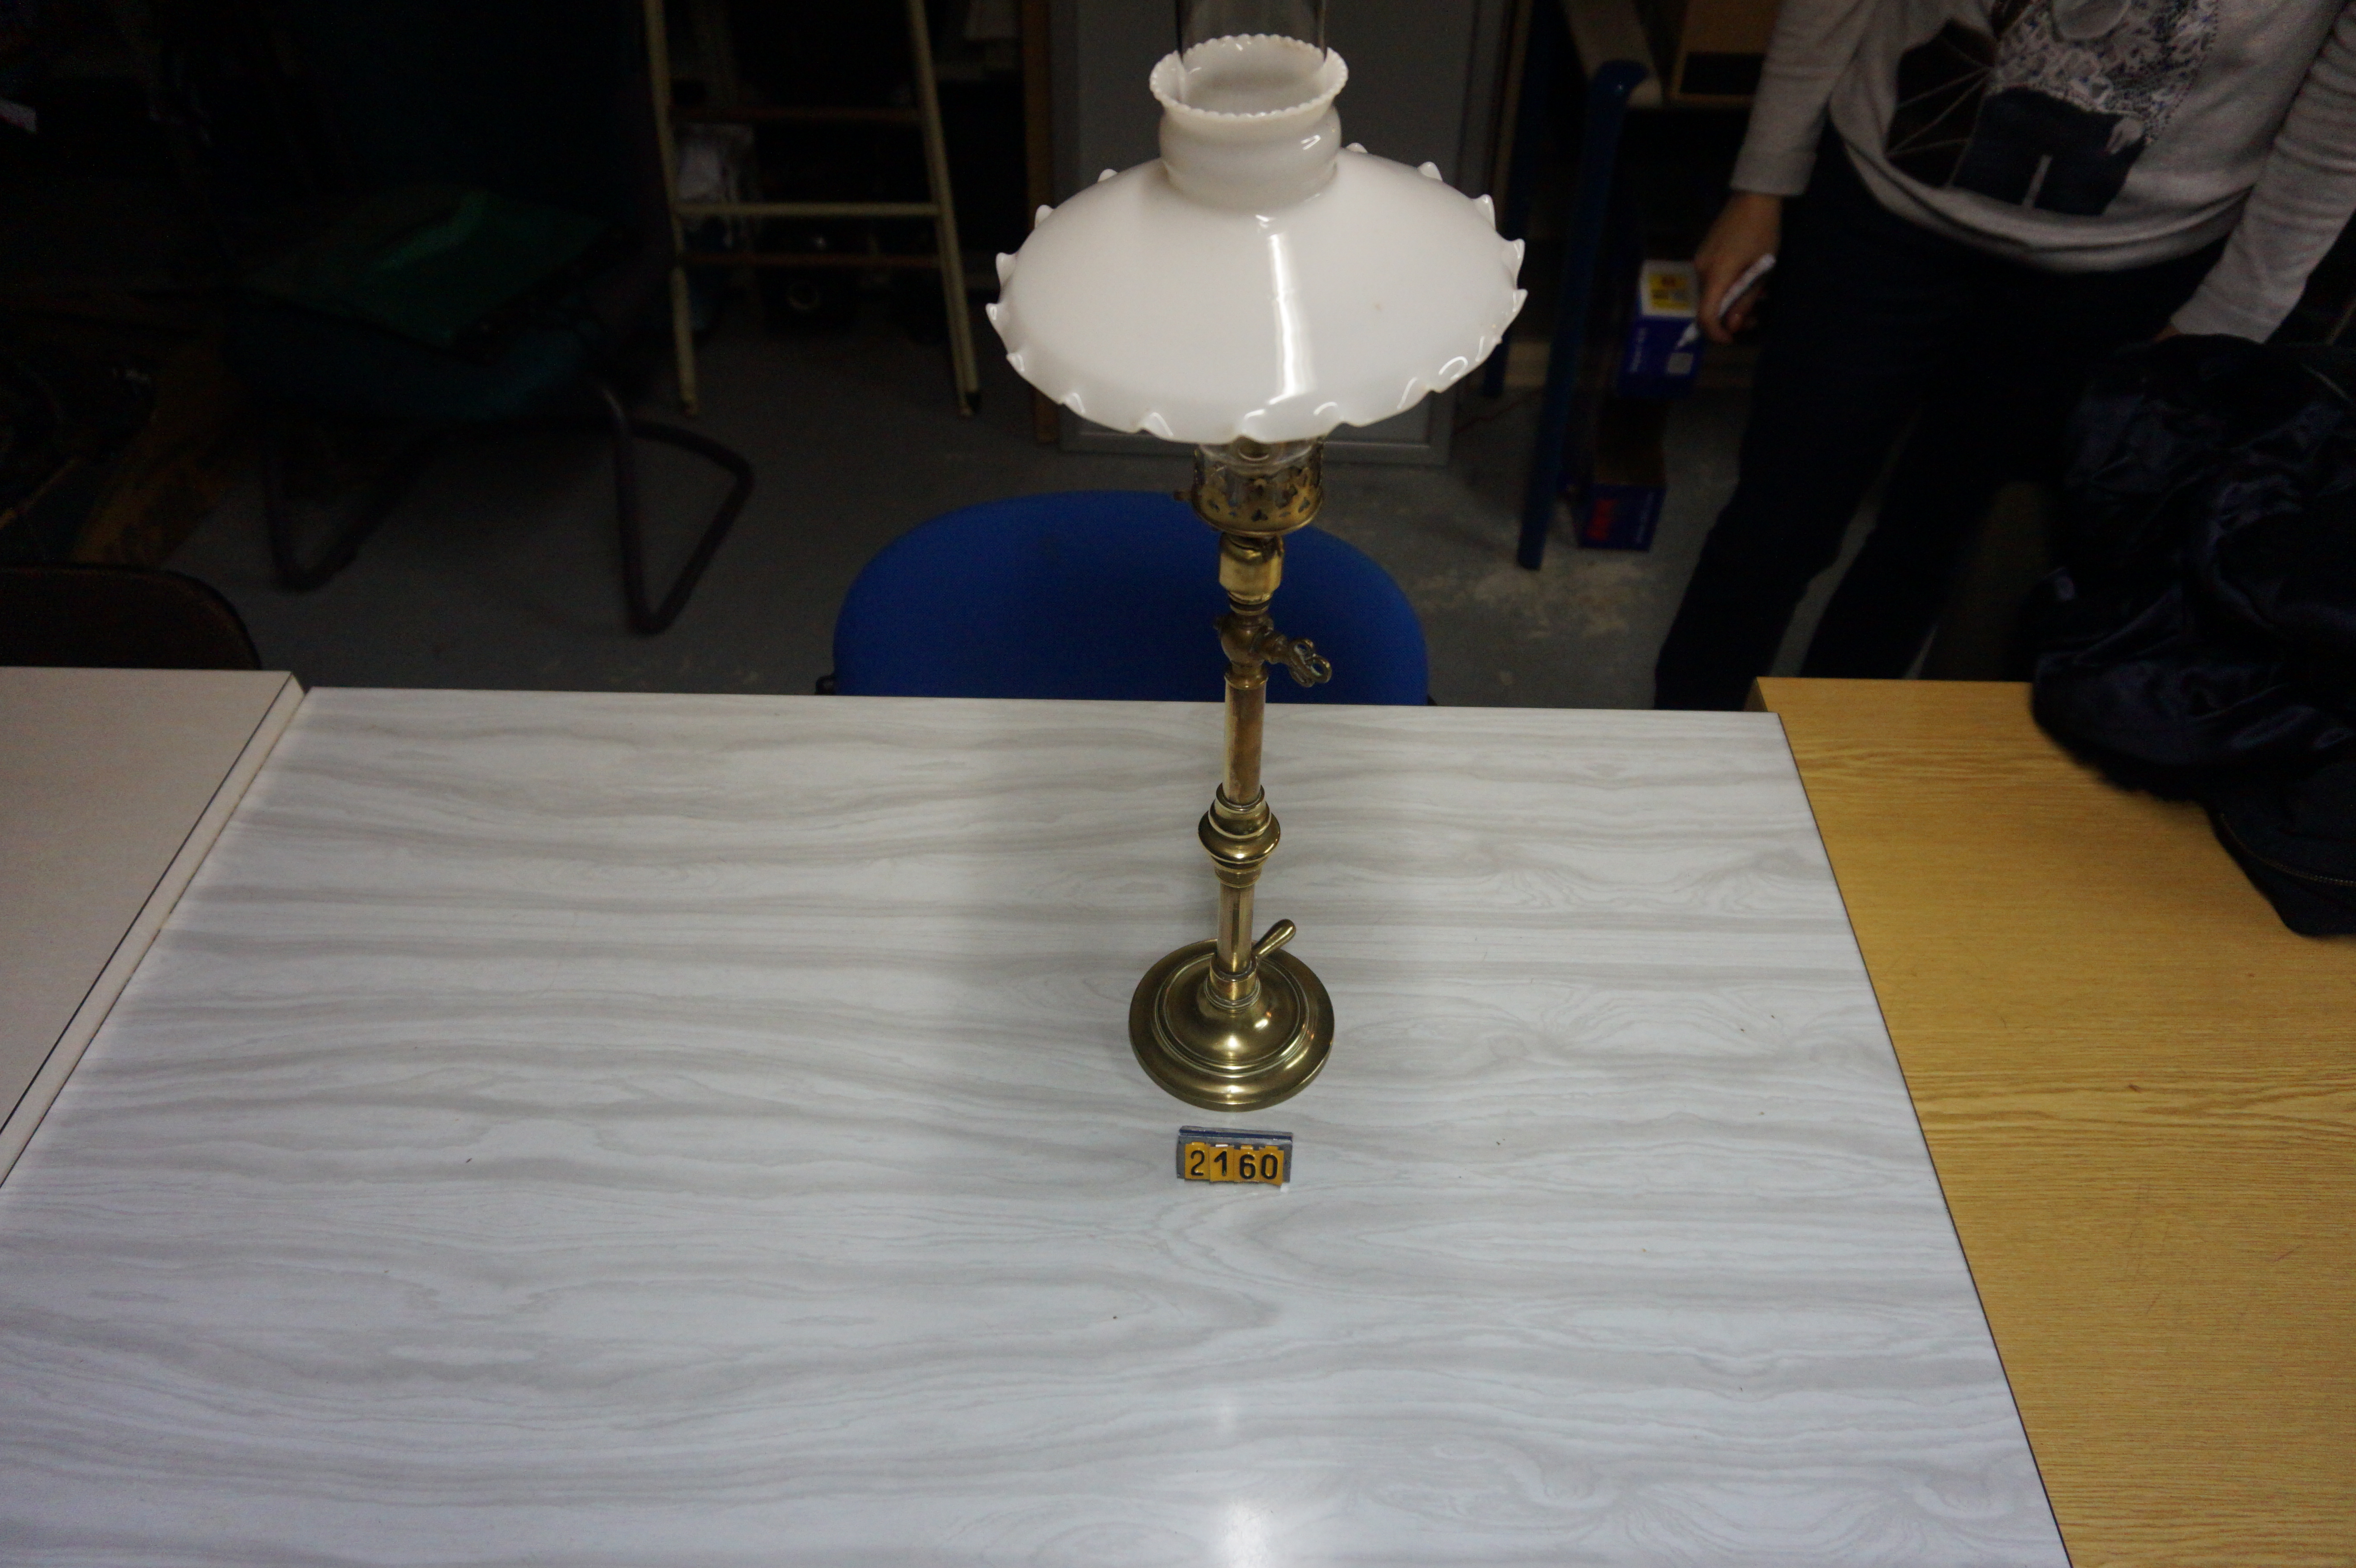  Collection ASPEG, pièce numéro 2160 : lampe sur pied laiton